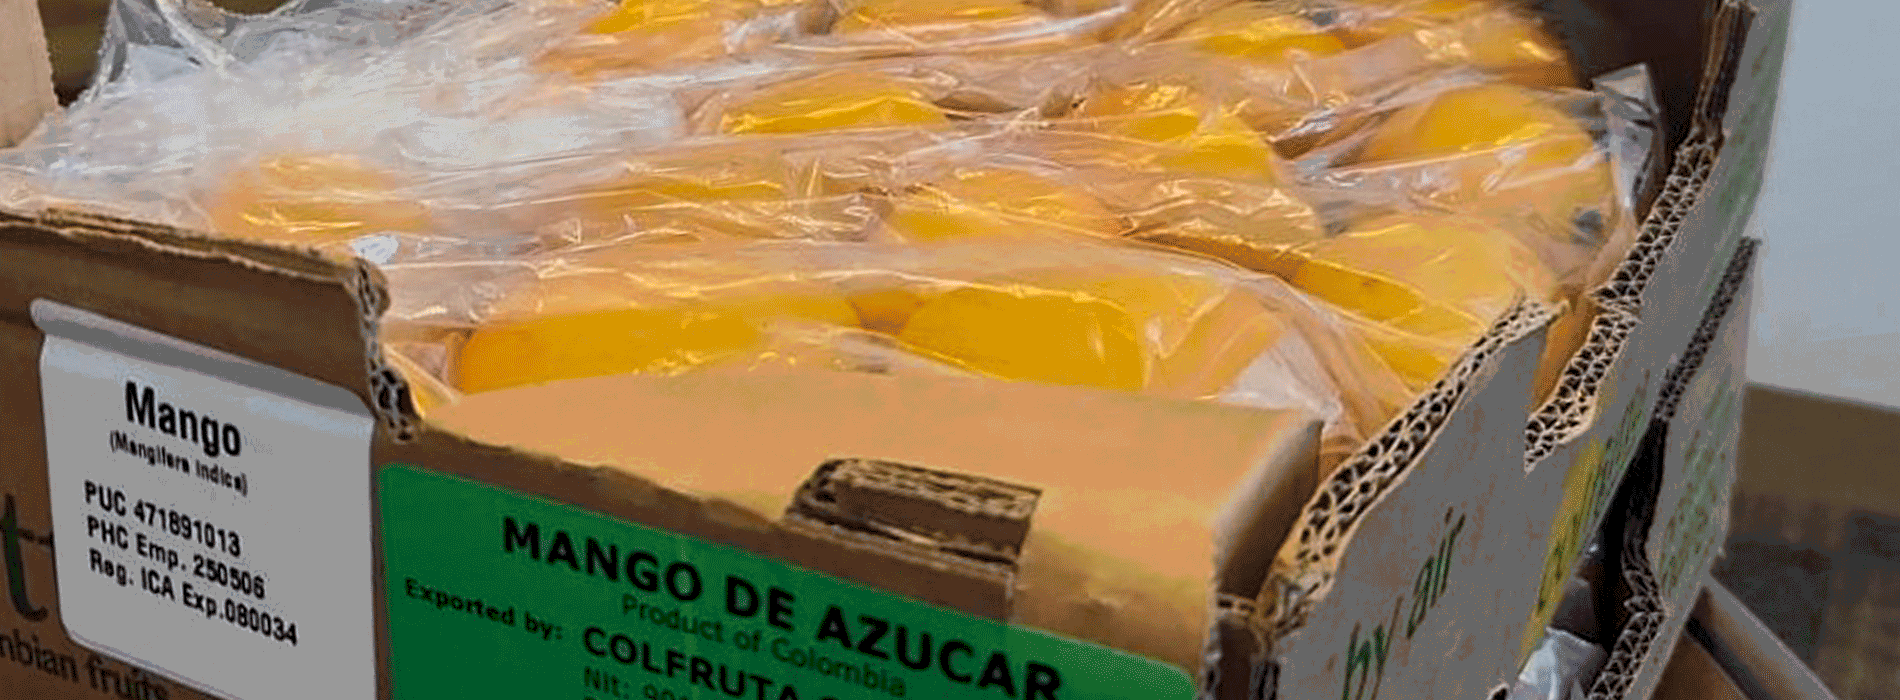 Colombian Sugar Mangoes